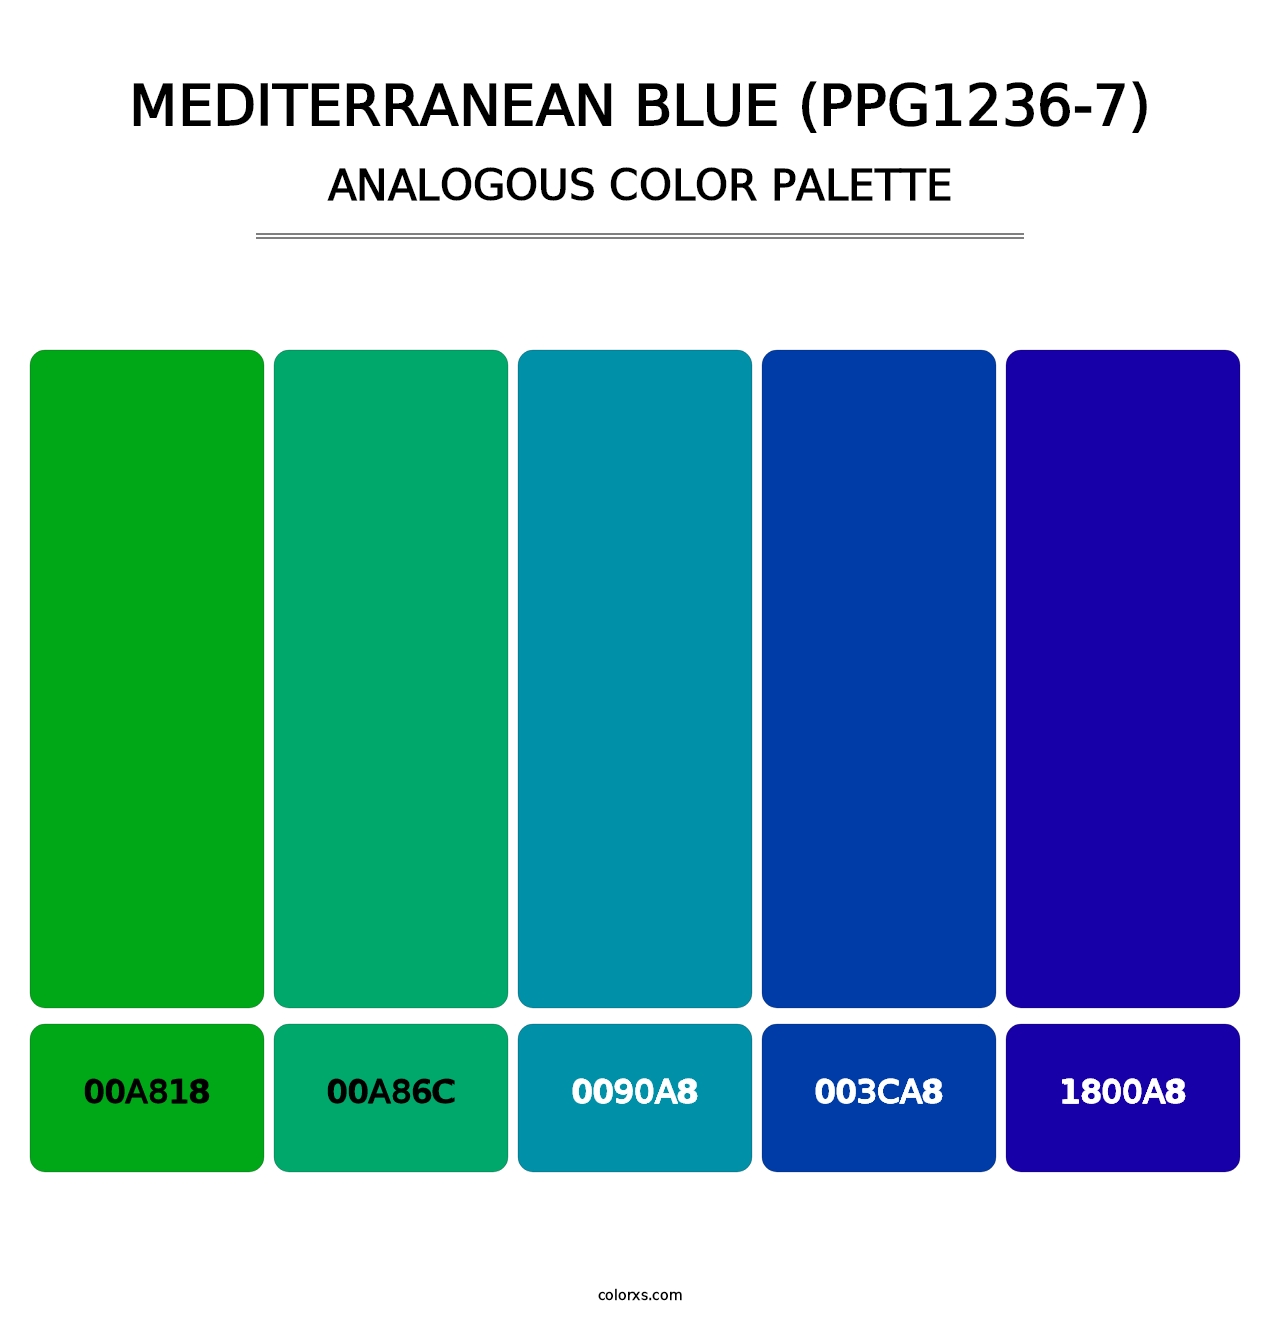 Mediterranean Blue (PPG1236-7) - Analogous Color Palette